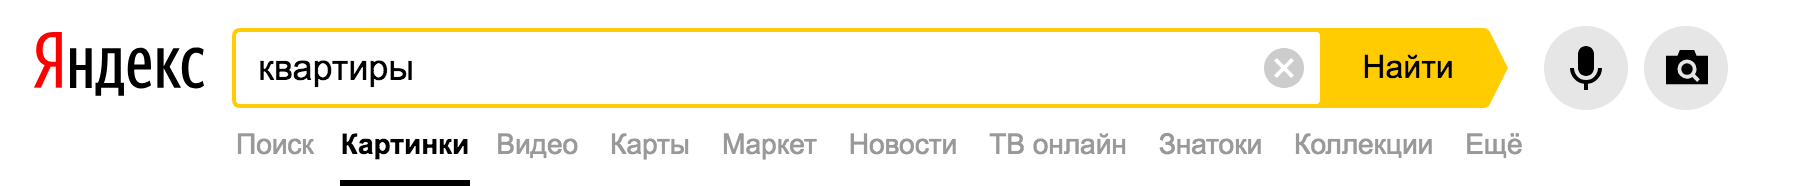 Квартиры с фотографиями удобно искать через Яндекс по фото. Если квартира продается на нескольких сайтах, это отобразится в результатах поиска